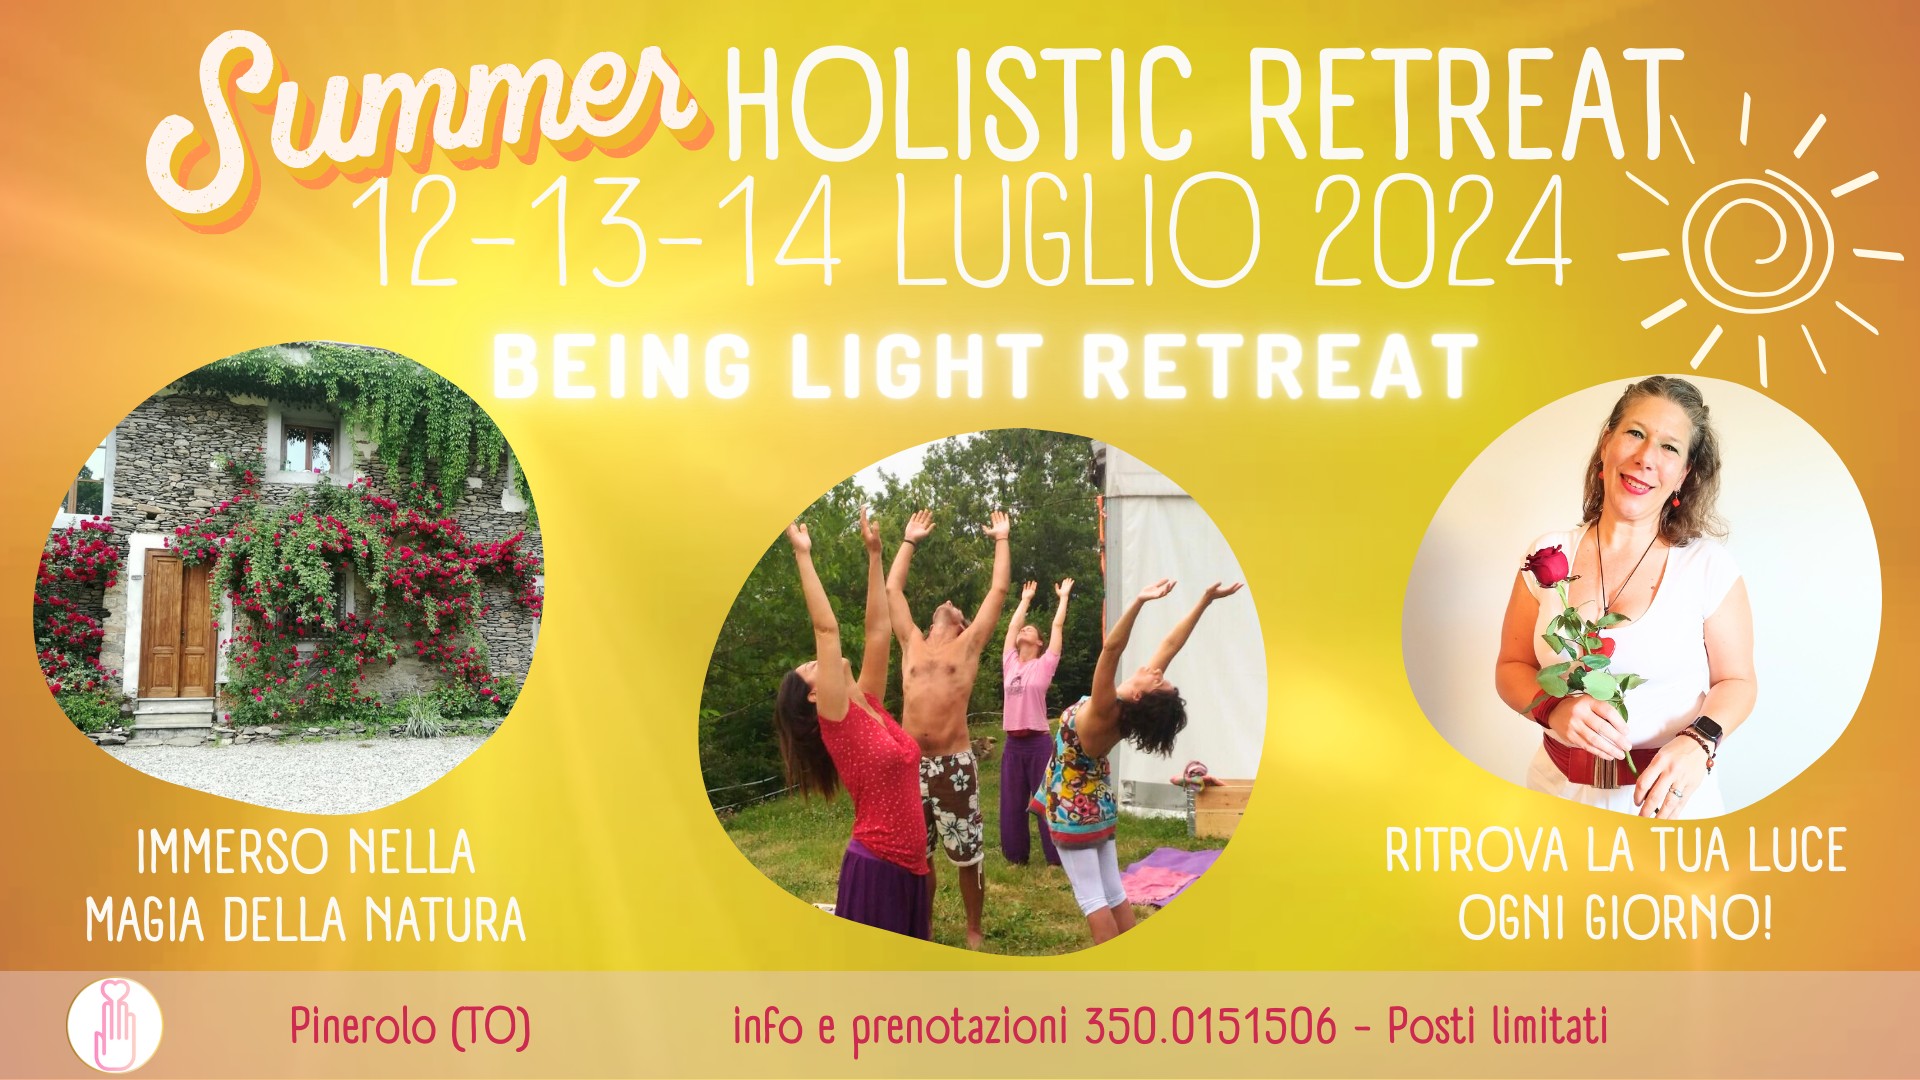 Summer Holistic Retreat Pinerolo - Luglio 2024